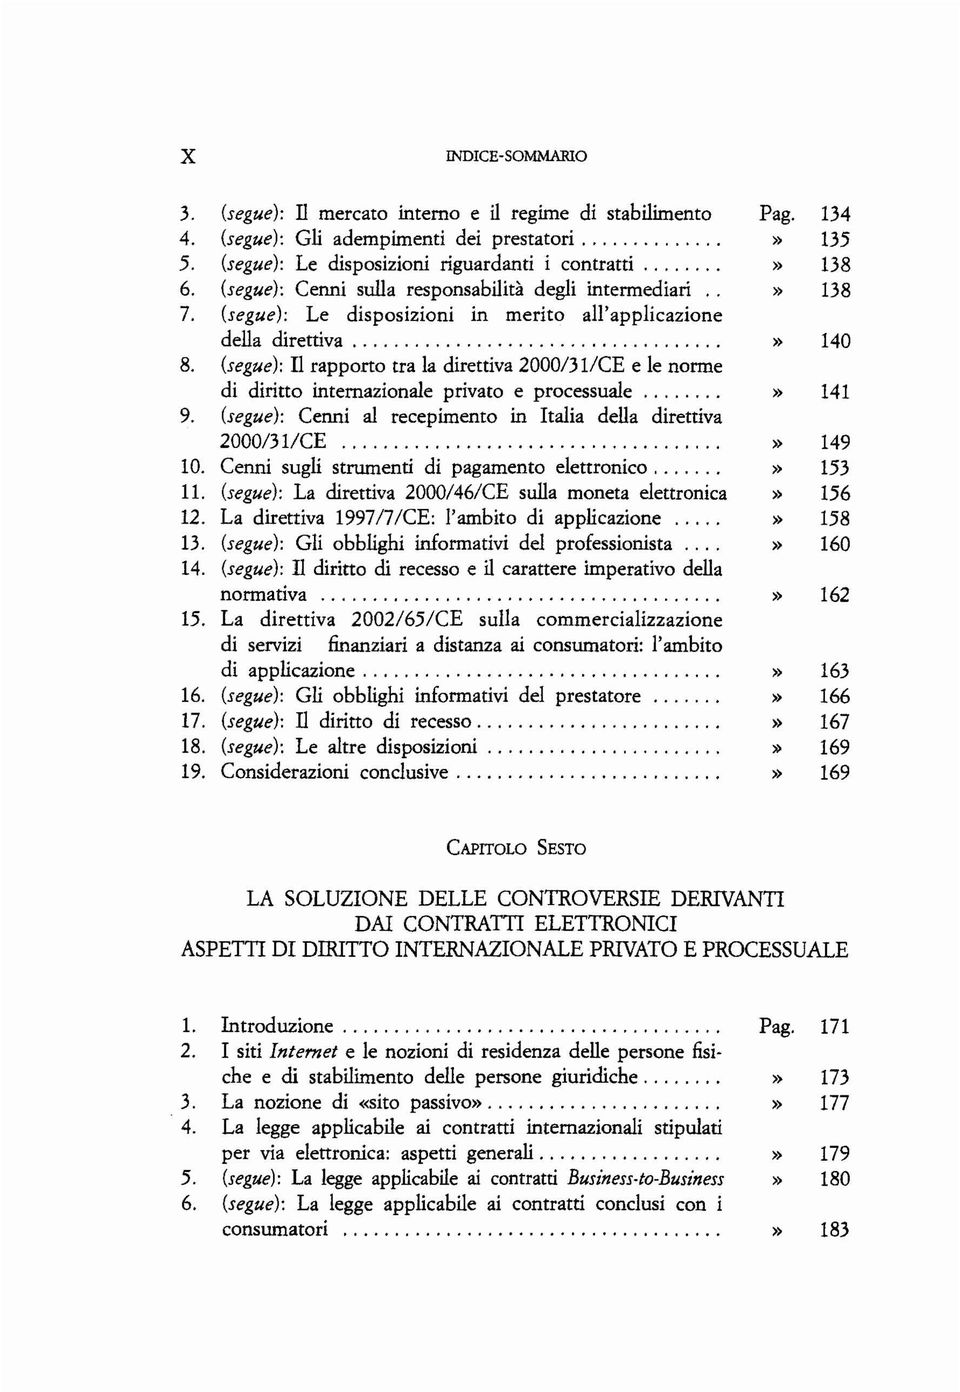 (segue): TI rapporto tra la direttiva 2000/311CE e le norme di diritto internazionale privato e processuale. 9. (segue): Cenni al recepimento in Italia della direttiva 2000/31/CE. lo.